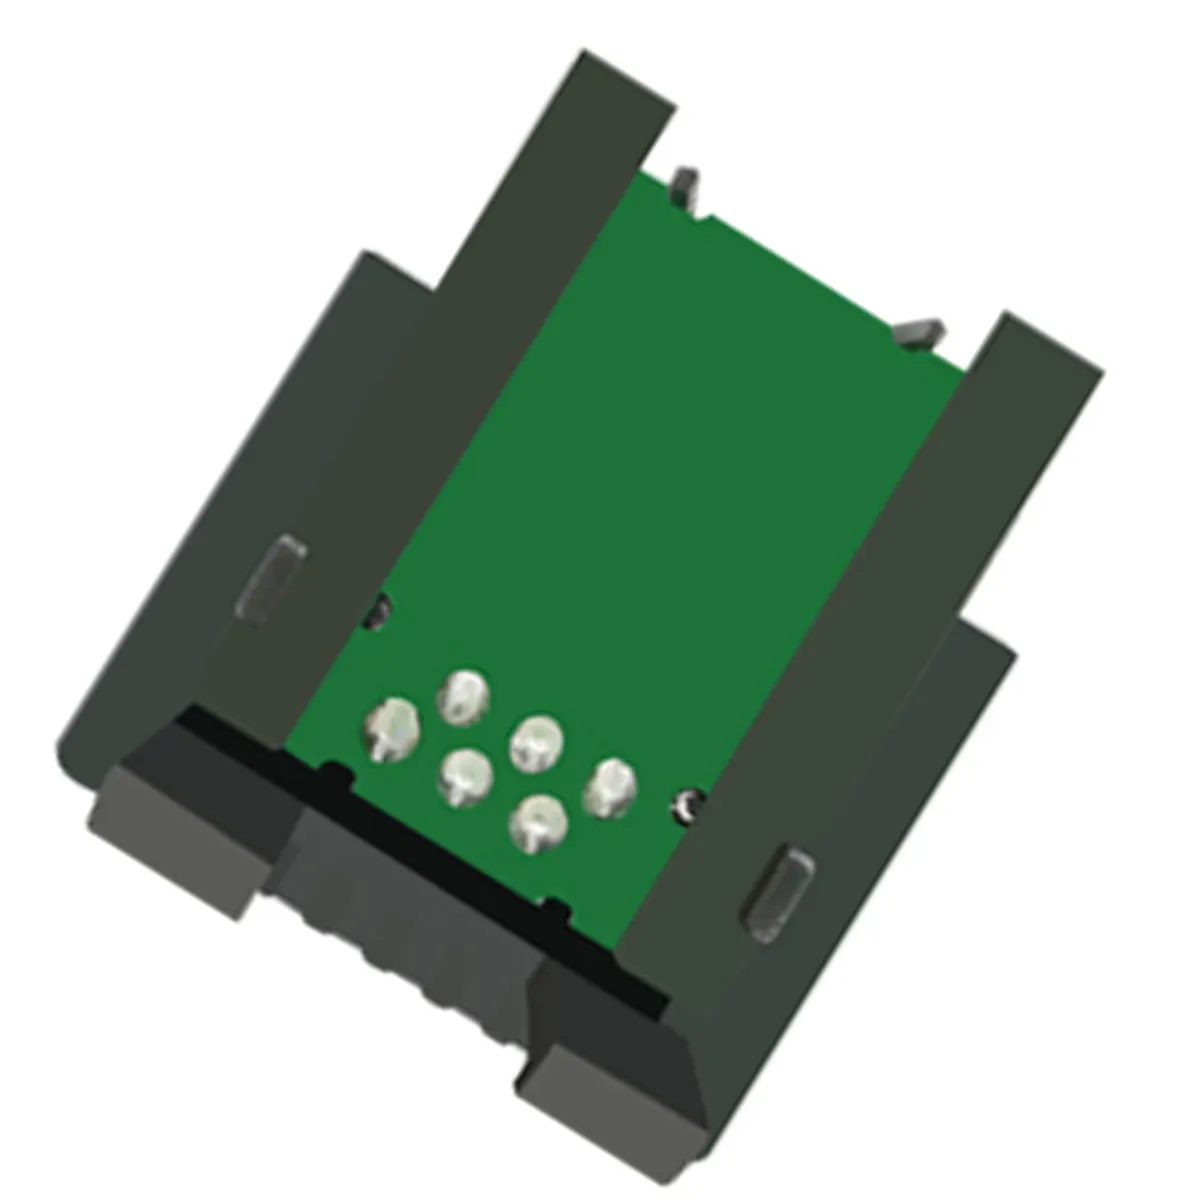 OKI DATA B710 칩용 칩 레이저 토너 카트리지 새로운 호환 레이저 토너 칩/OKI용 블랙 정품